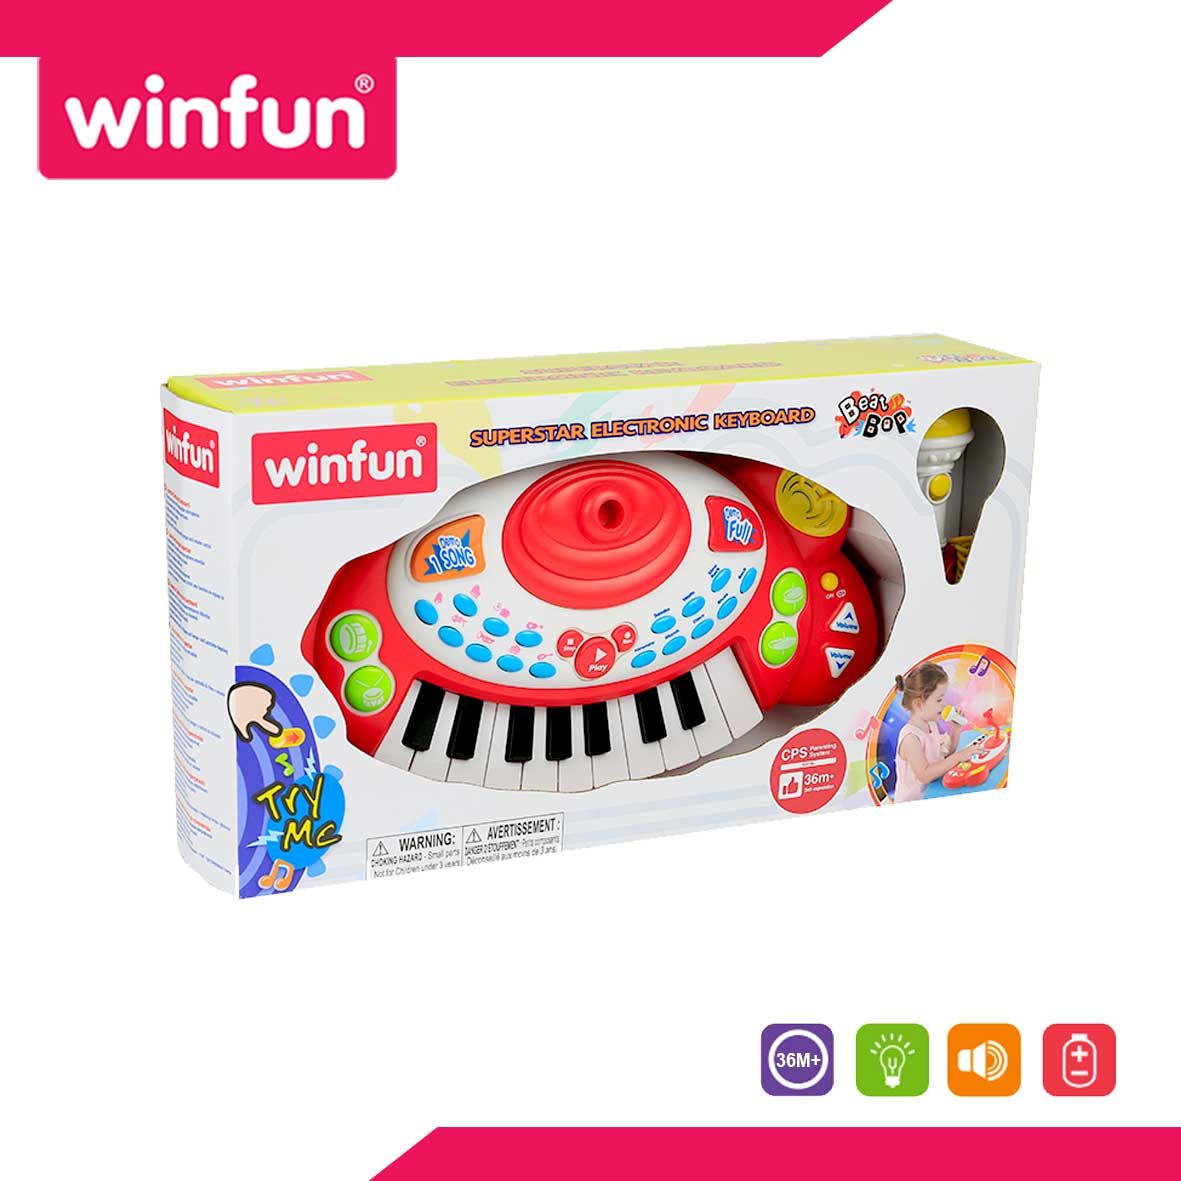 Winfun Superstar Electronic Keyboard - W002055 - 2